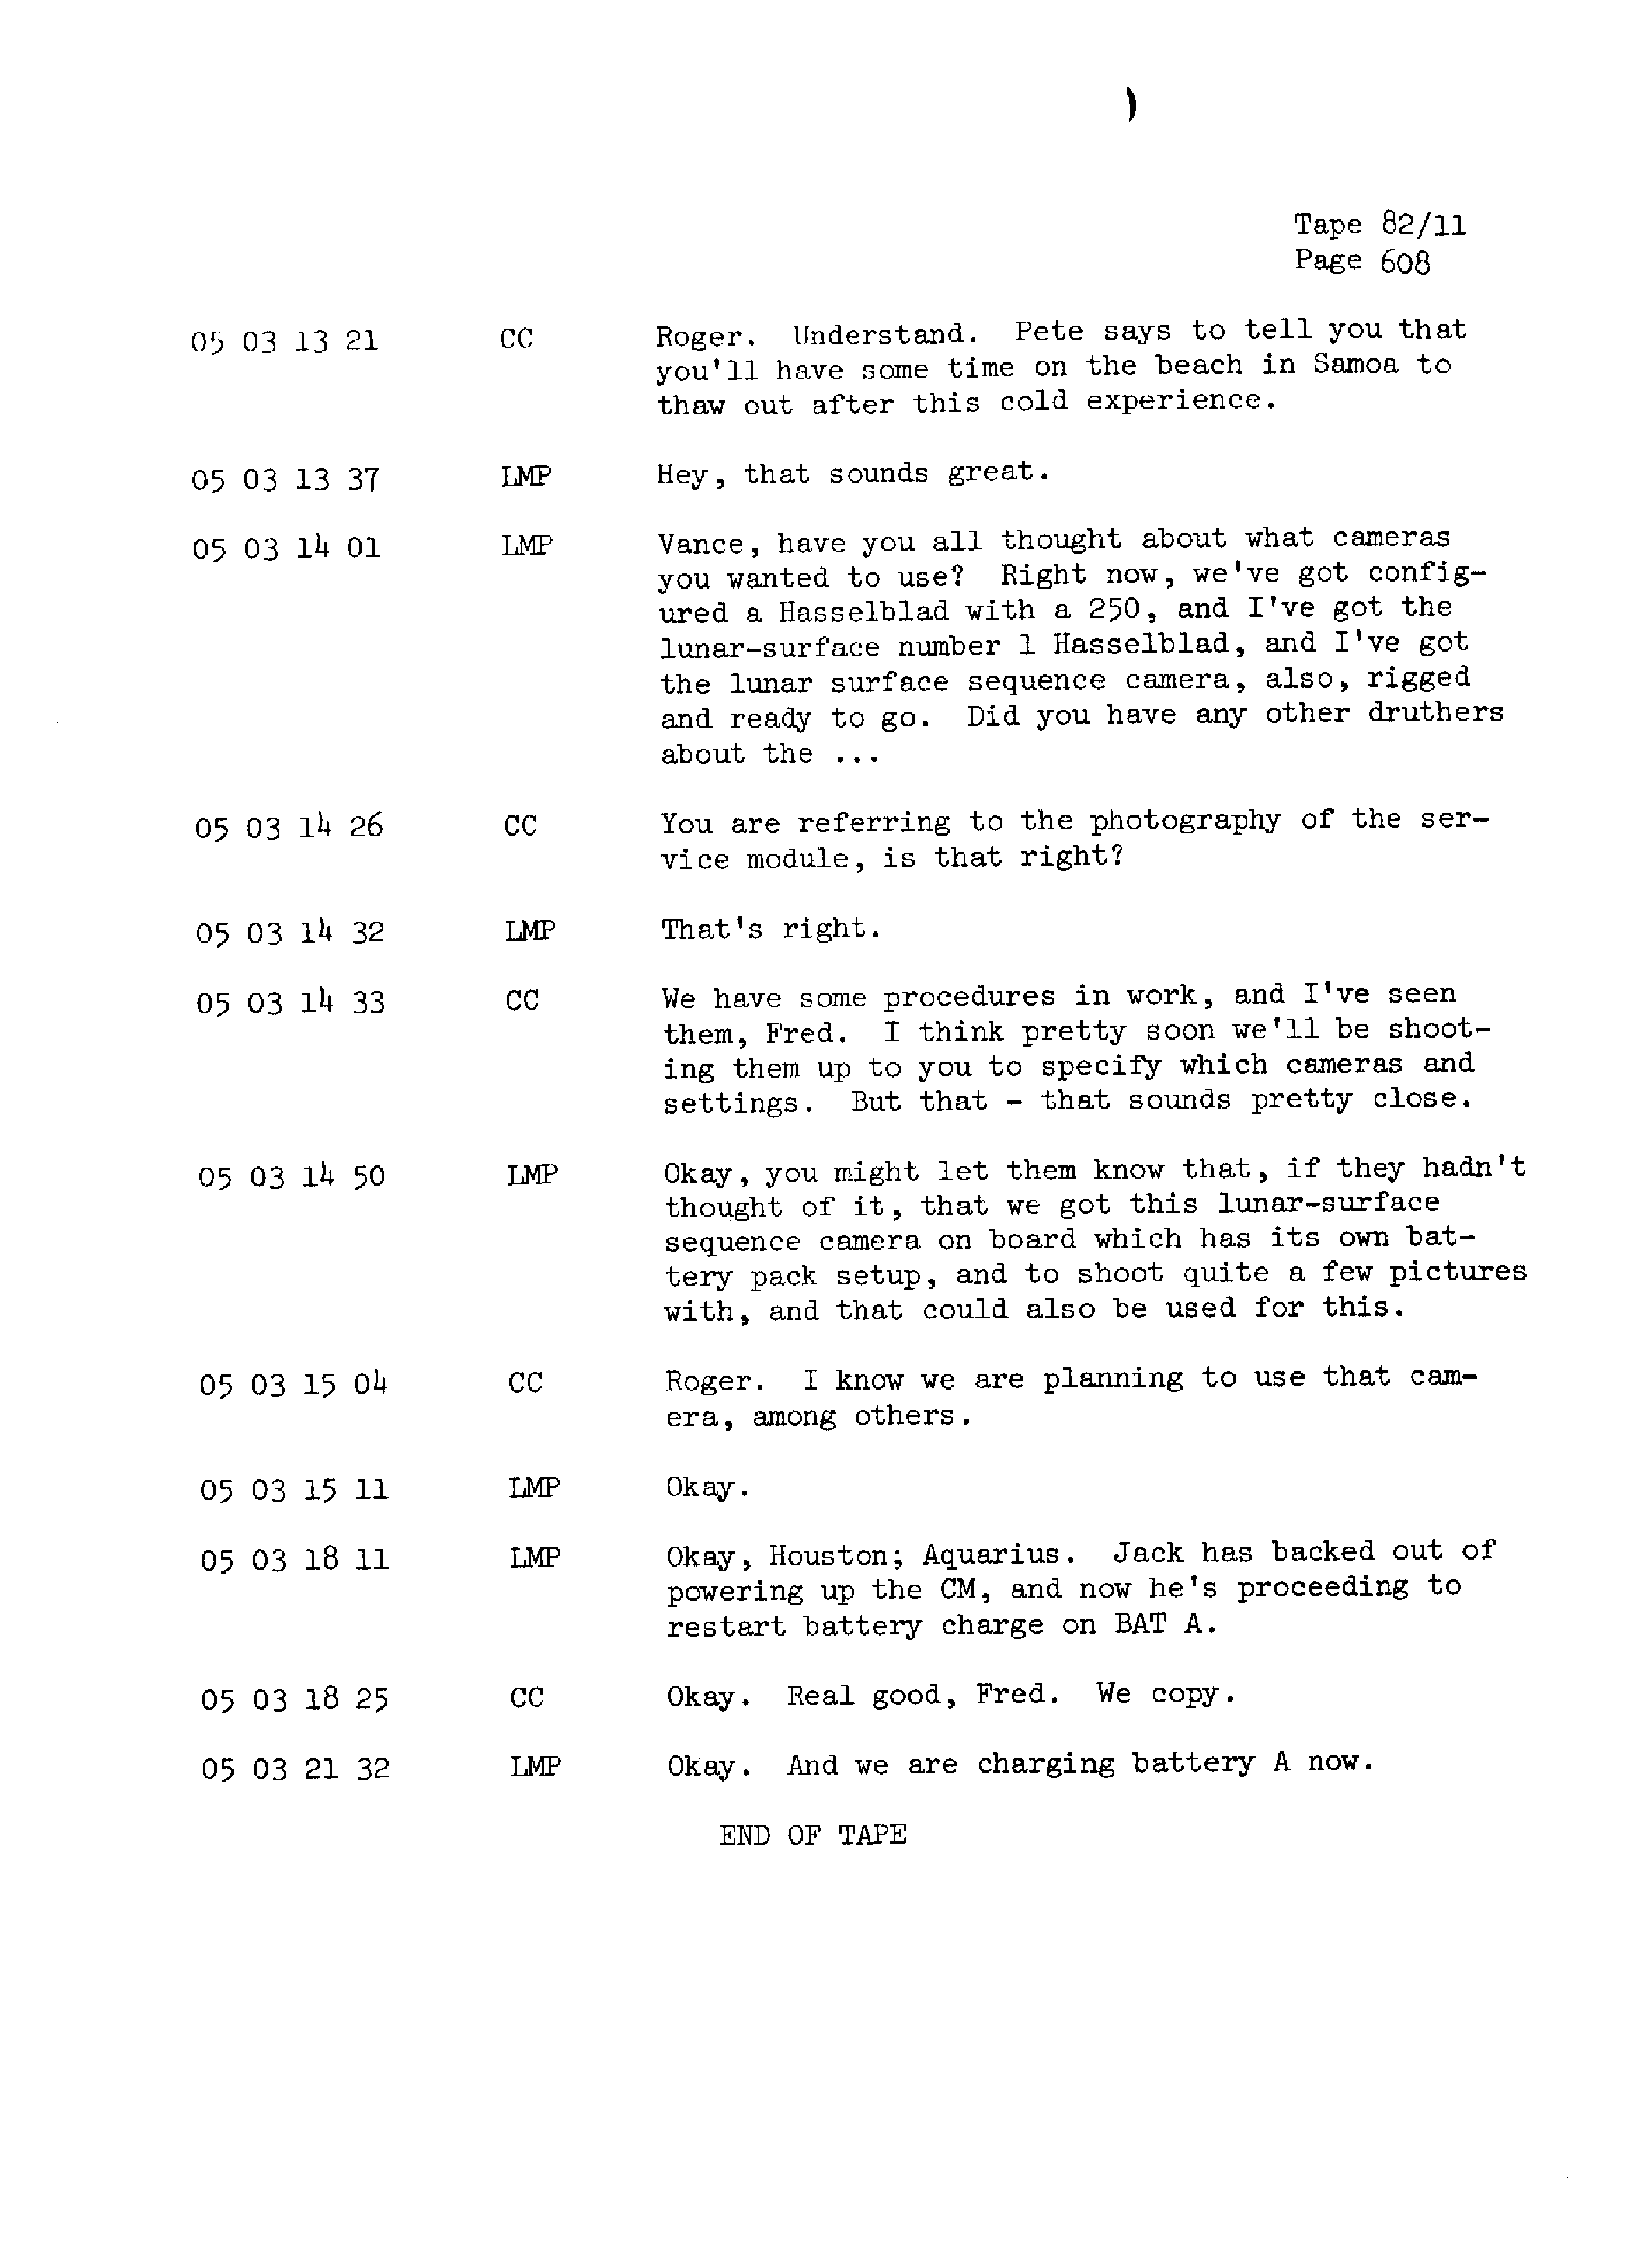 Page 615 of Apollo 13’s original transcript